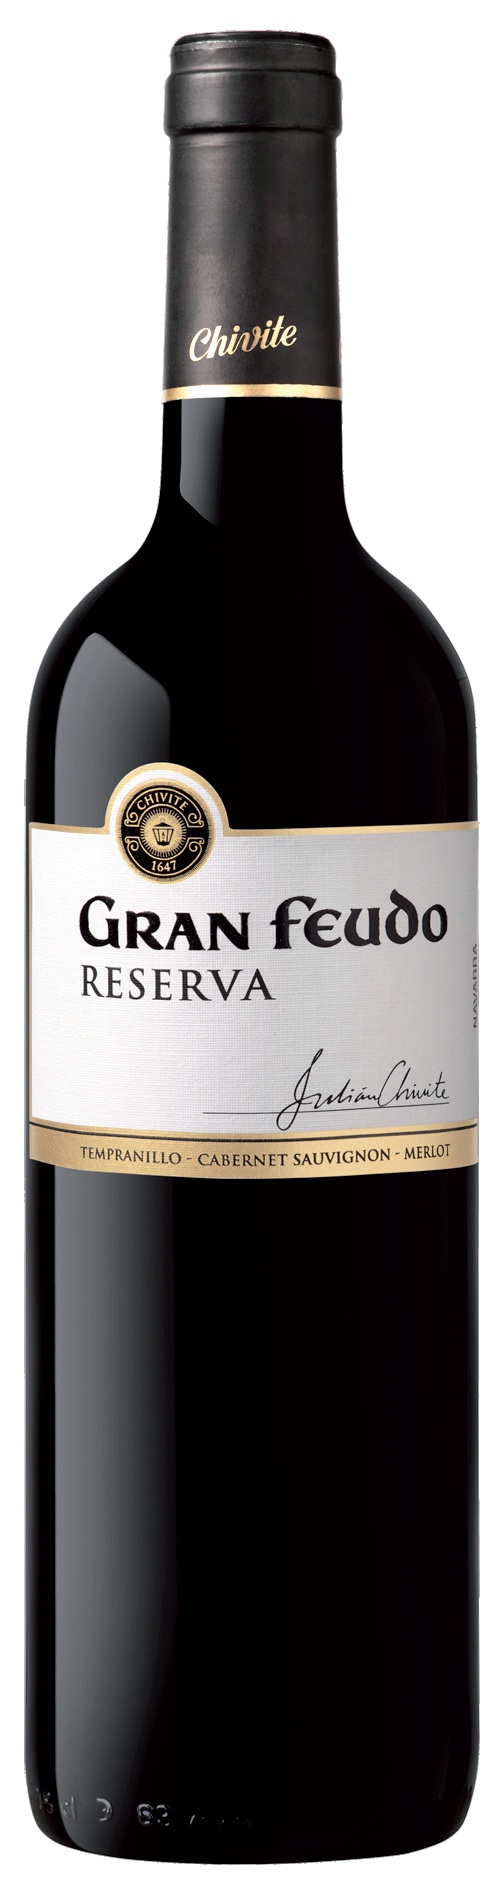 Bild von der Weinflasche Gran Feudo Reserva